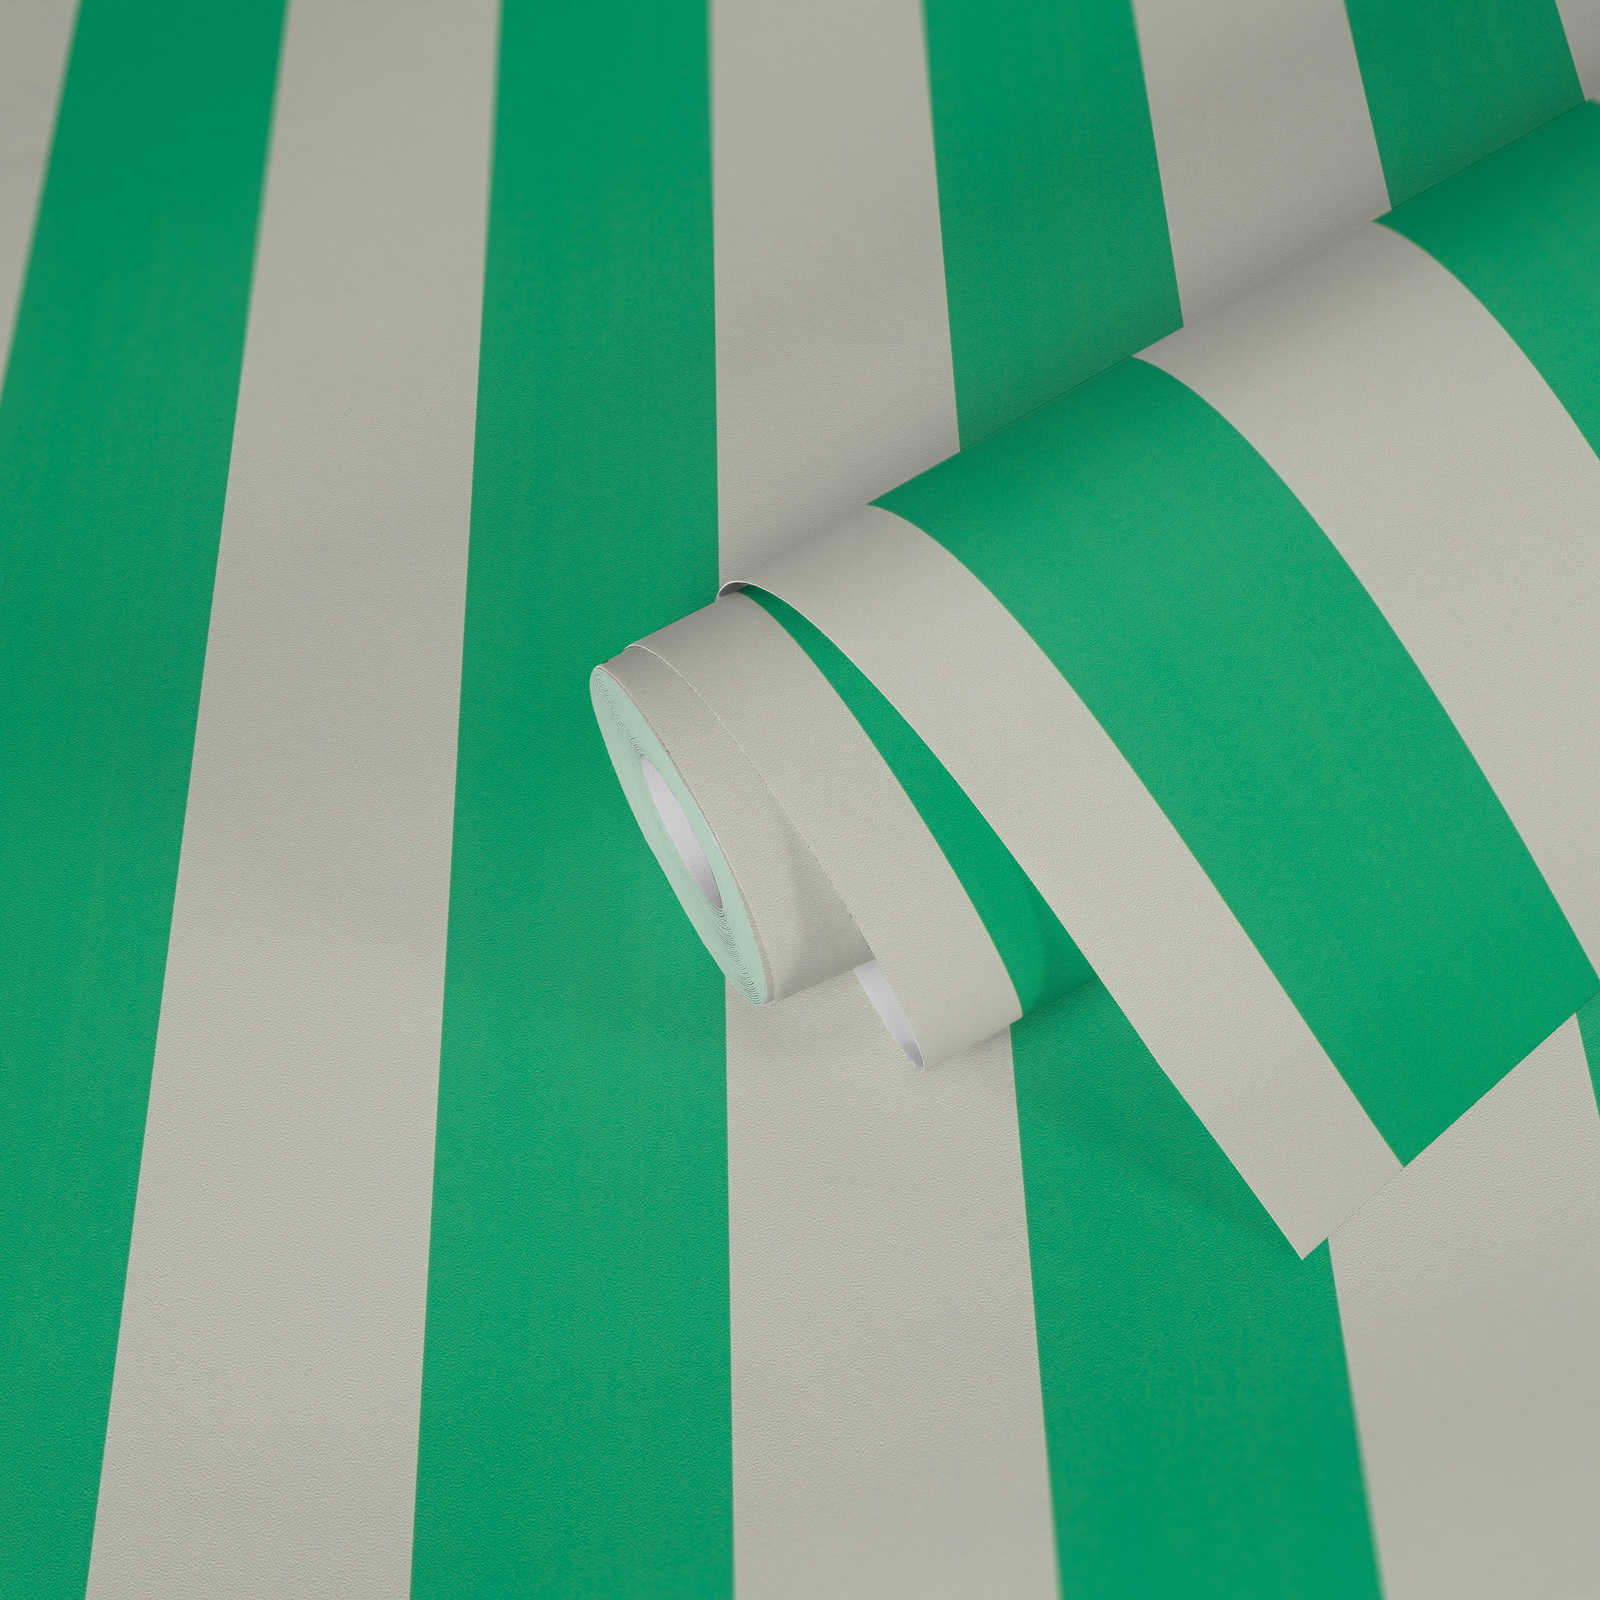             Gestreept behang met lichte structuur - groen, wit
        